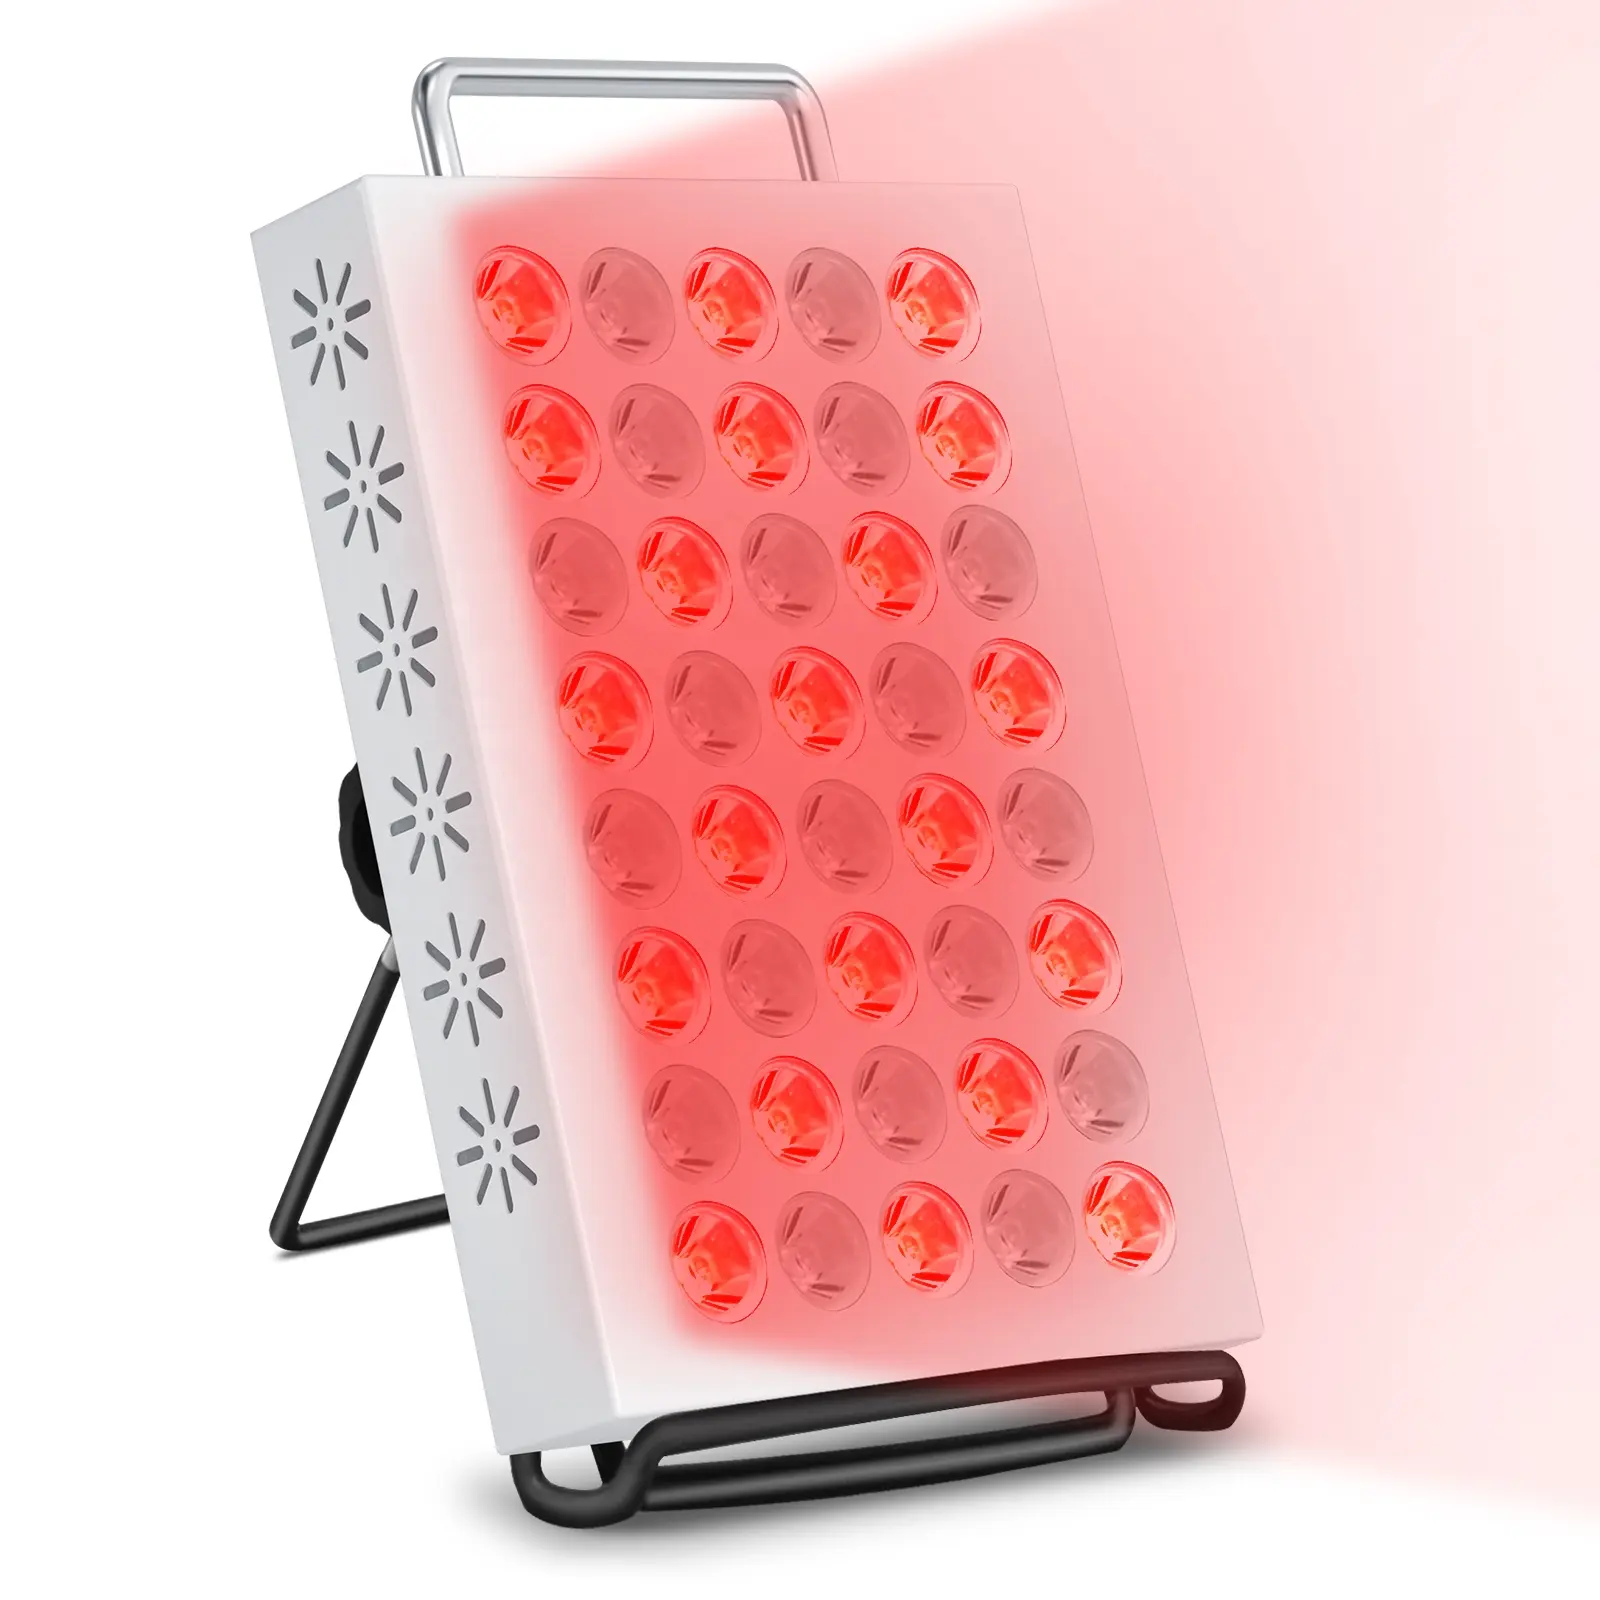 Panel terapi lampu merah, 40LED 660nm dan 850nm lampu Kombo perangkat terapi lampu inframerah untuk kecantikan wajah tubuh pereda nyeri